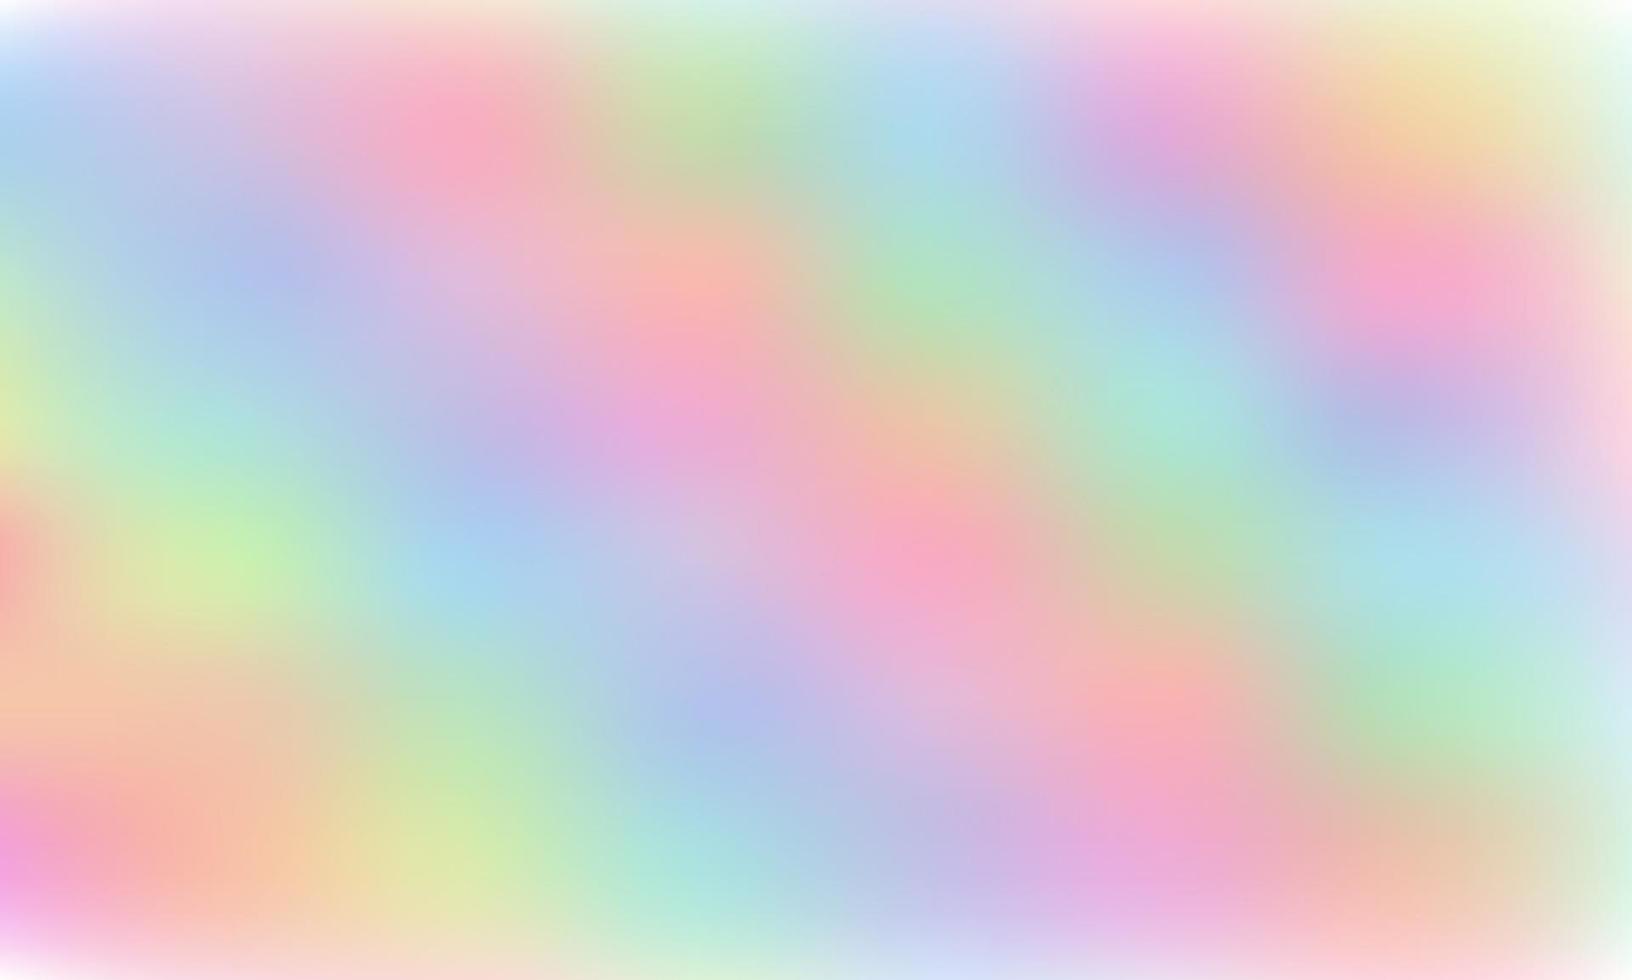 regenboog fantasie achtergrond. holografische illustratie in pastelkleuren. leuke cartoon girly achtergrond. heldere veelkleurige lucht. vector. vector